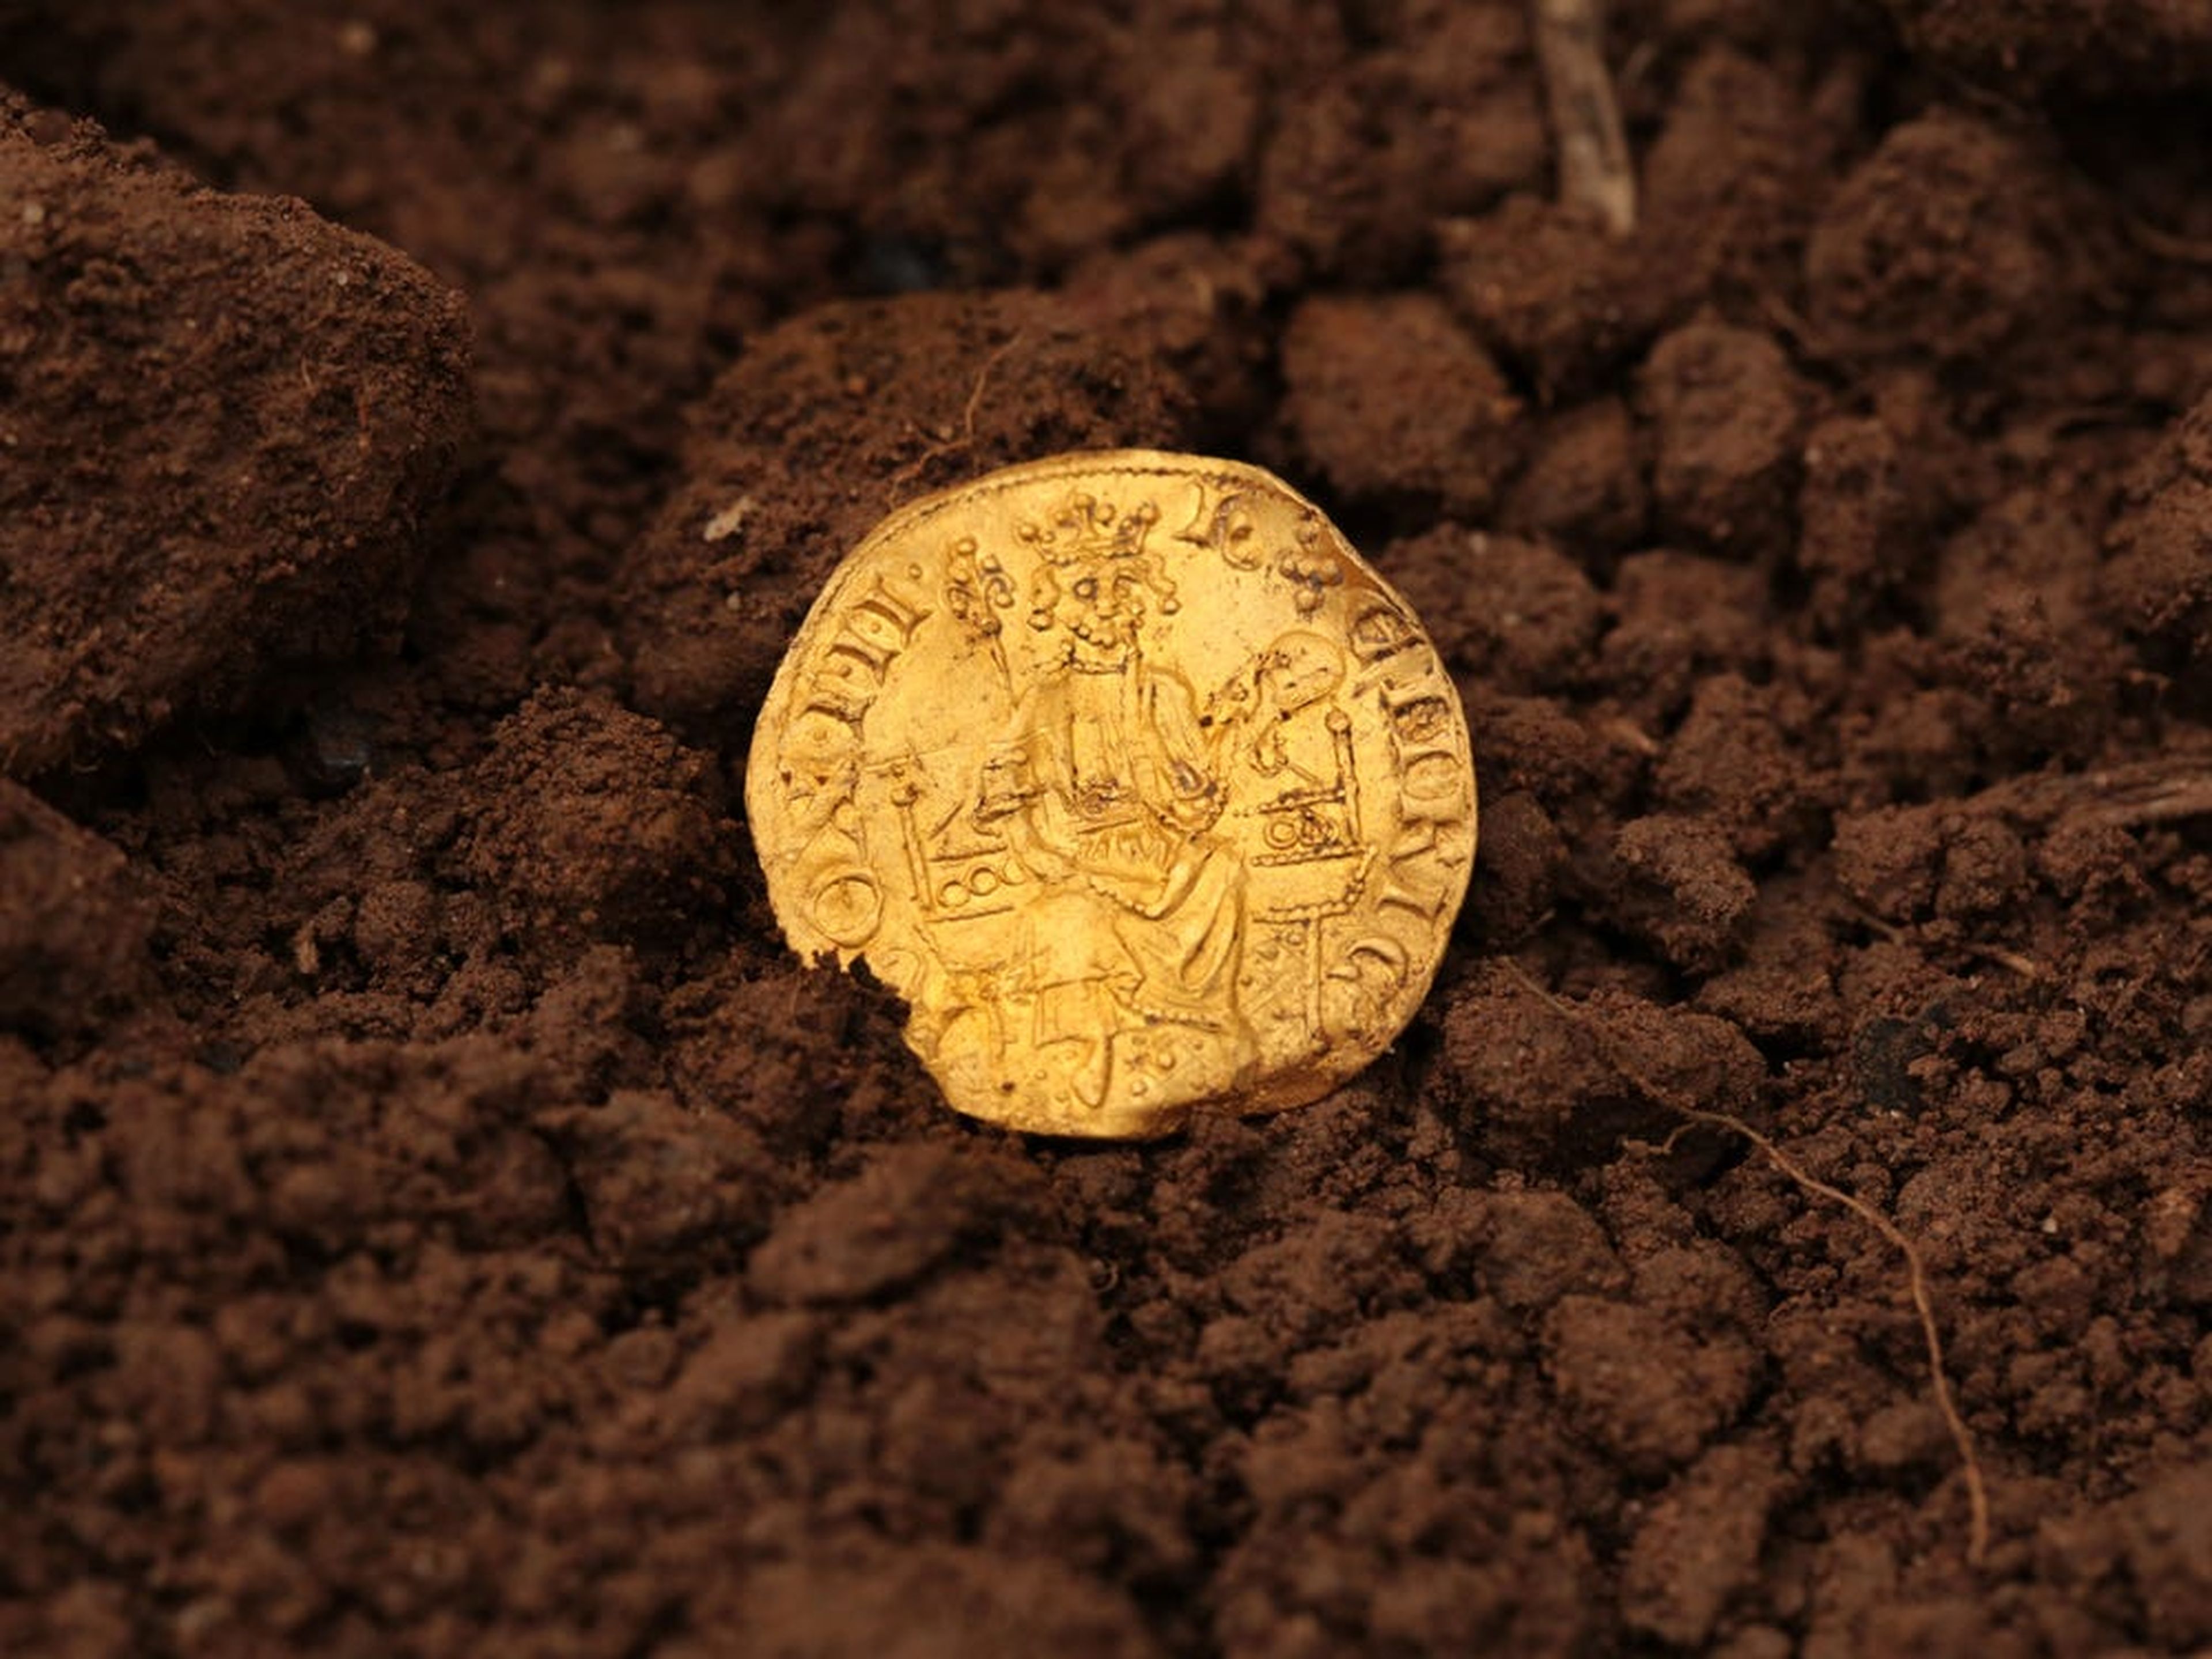 La moneda de oro encontrada data del siglo XIII.